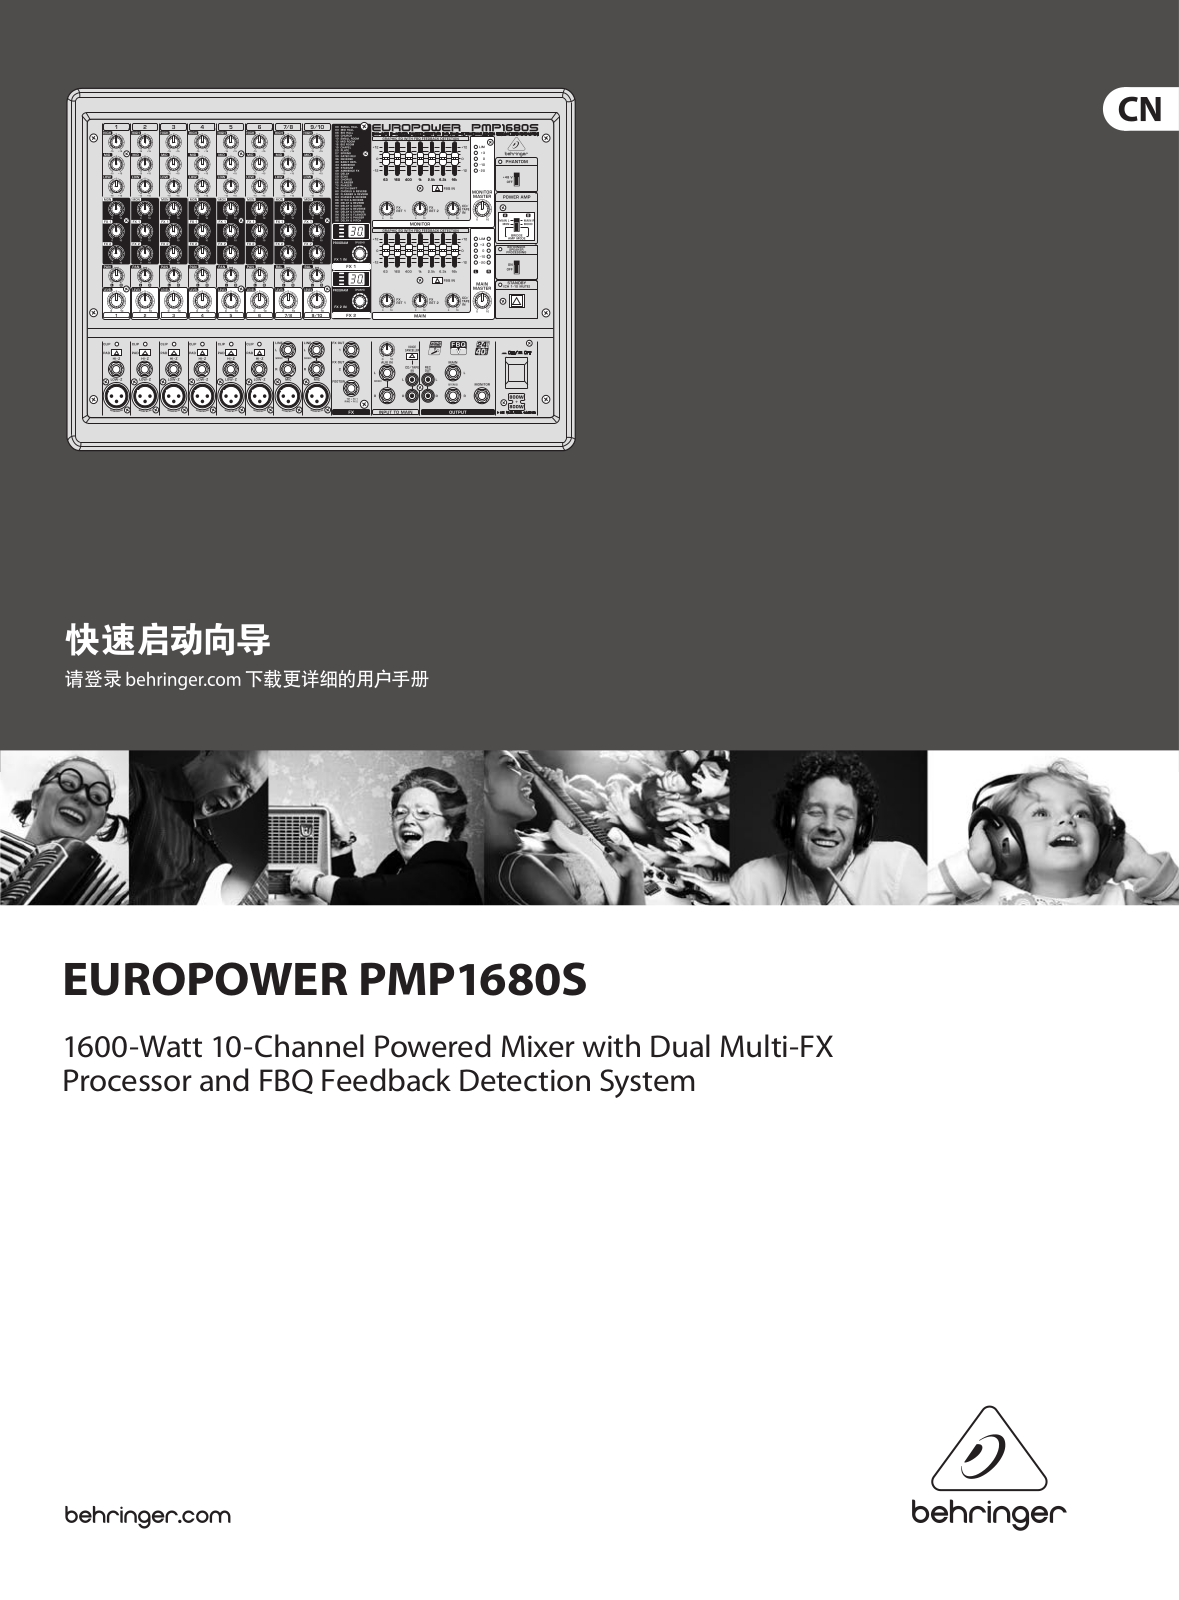 behringer PMP1680S Service Manual